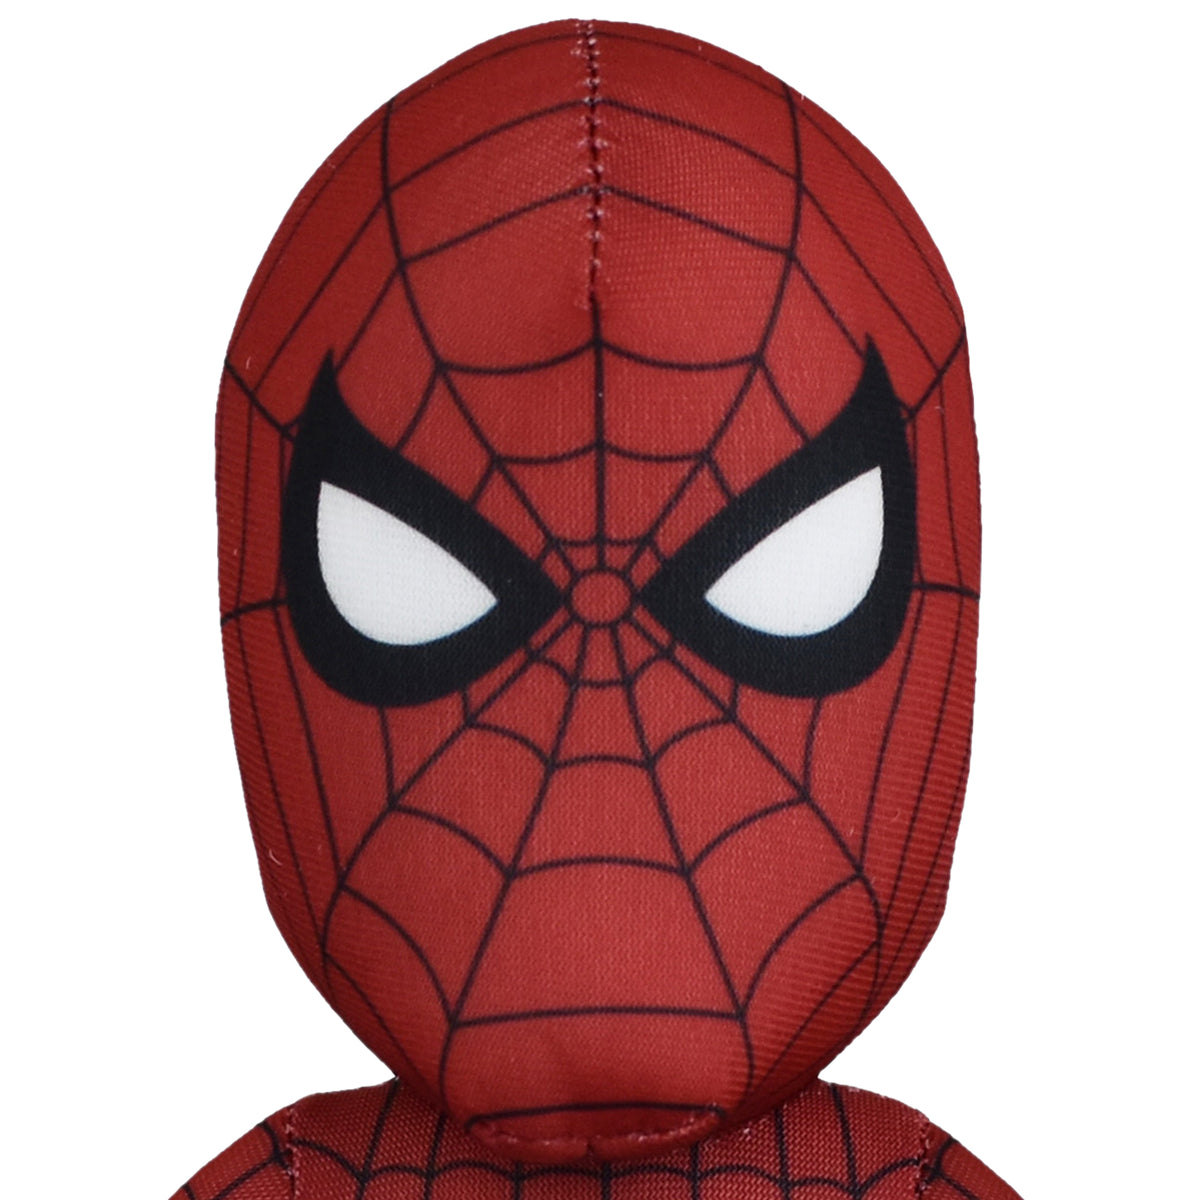 Marvel Spider-Man 10&quot; Plush Figure